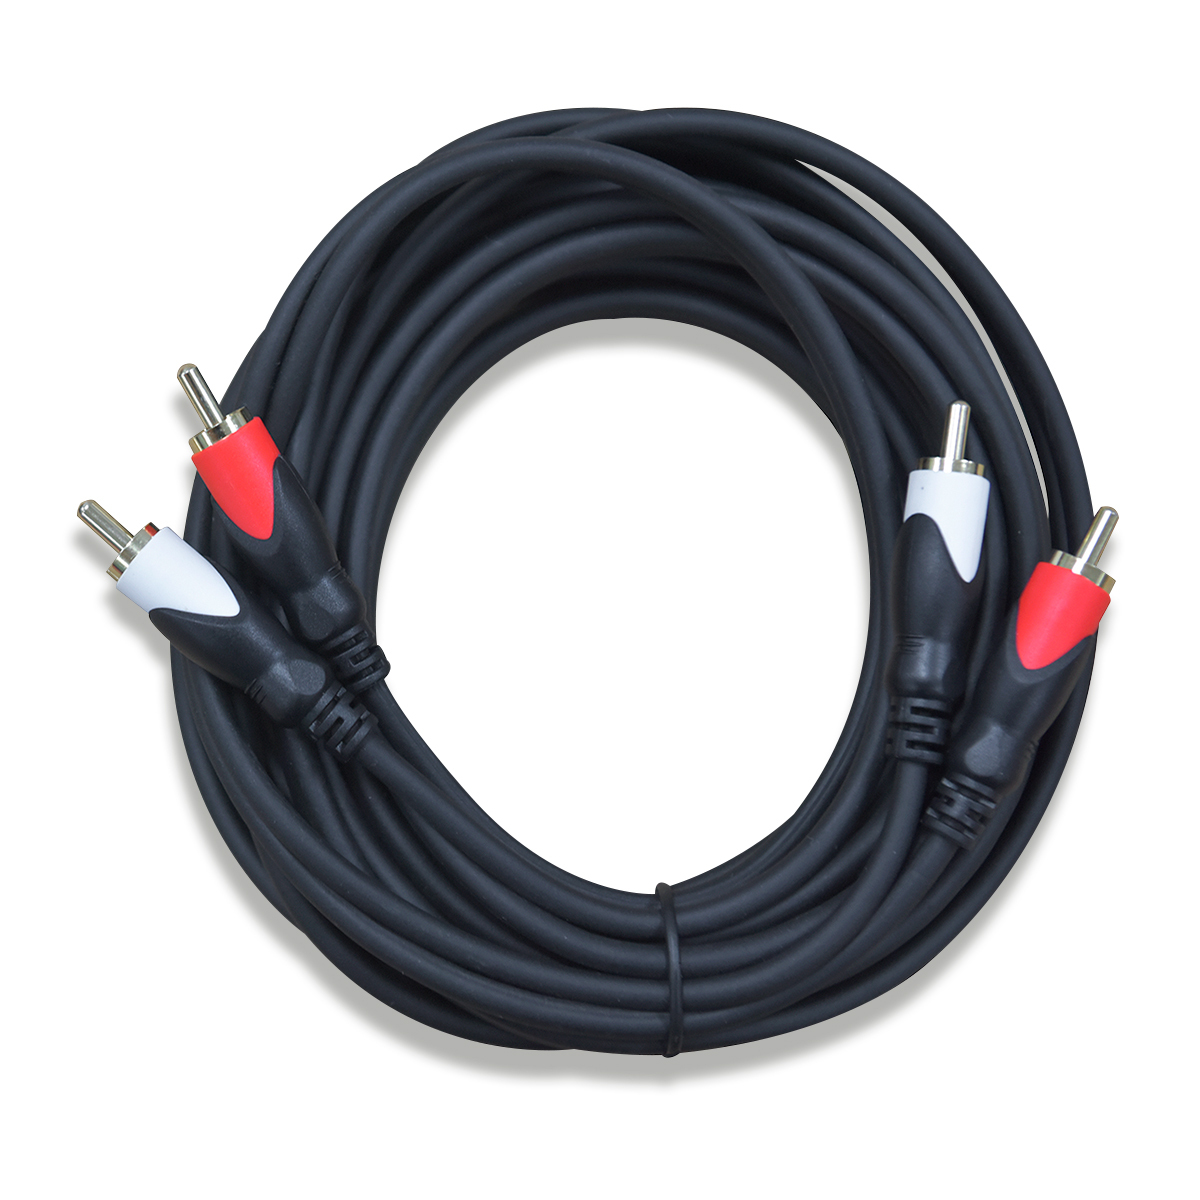 Cable Auxiliar 3.5 mm a Doble RCA RadioShack / 1.8 m / Plástico / Negro, Cables y Adaptadores de Video, TV y Video, Originales RadioShack, Todas, Categoría